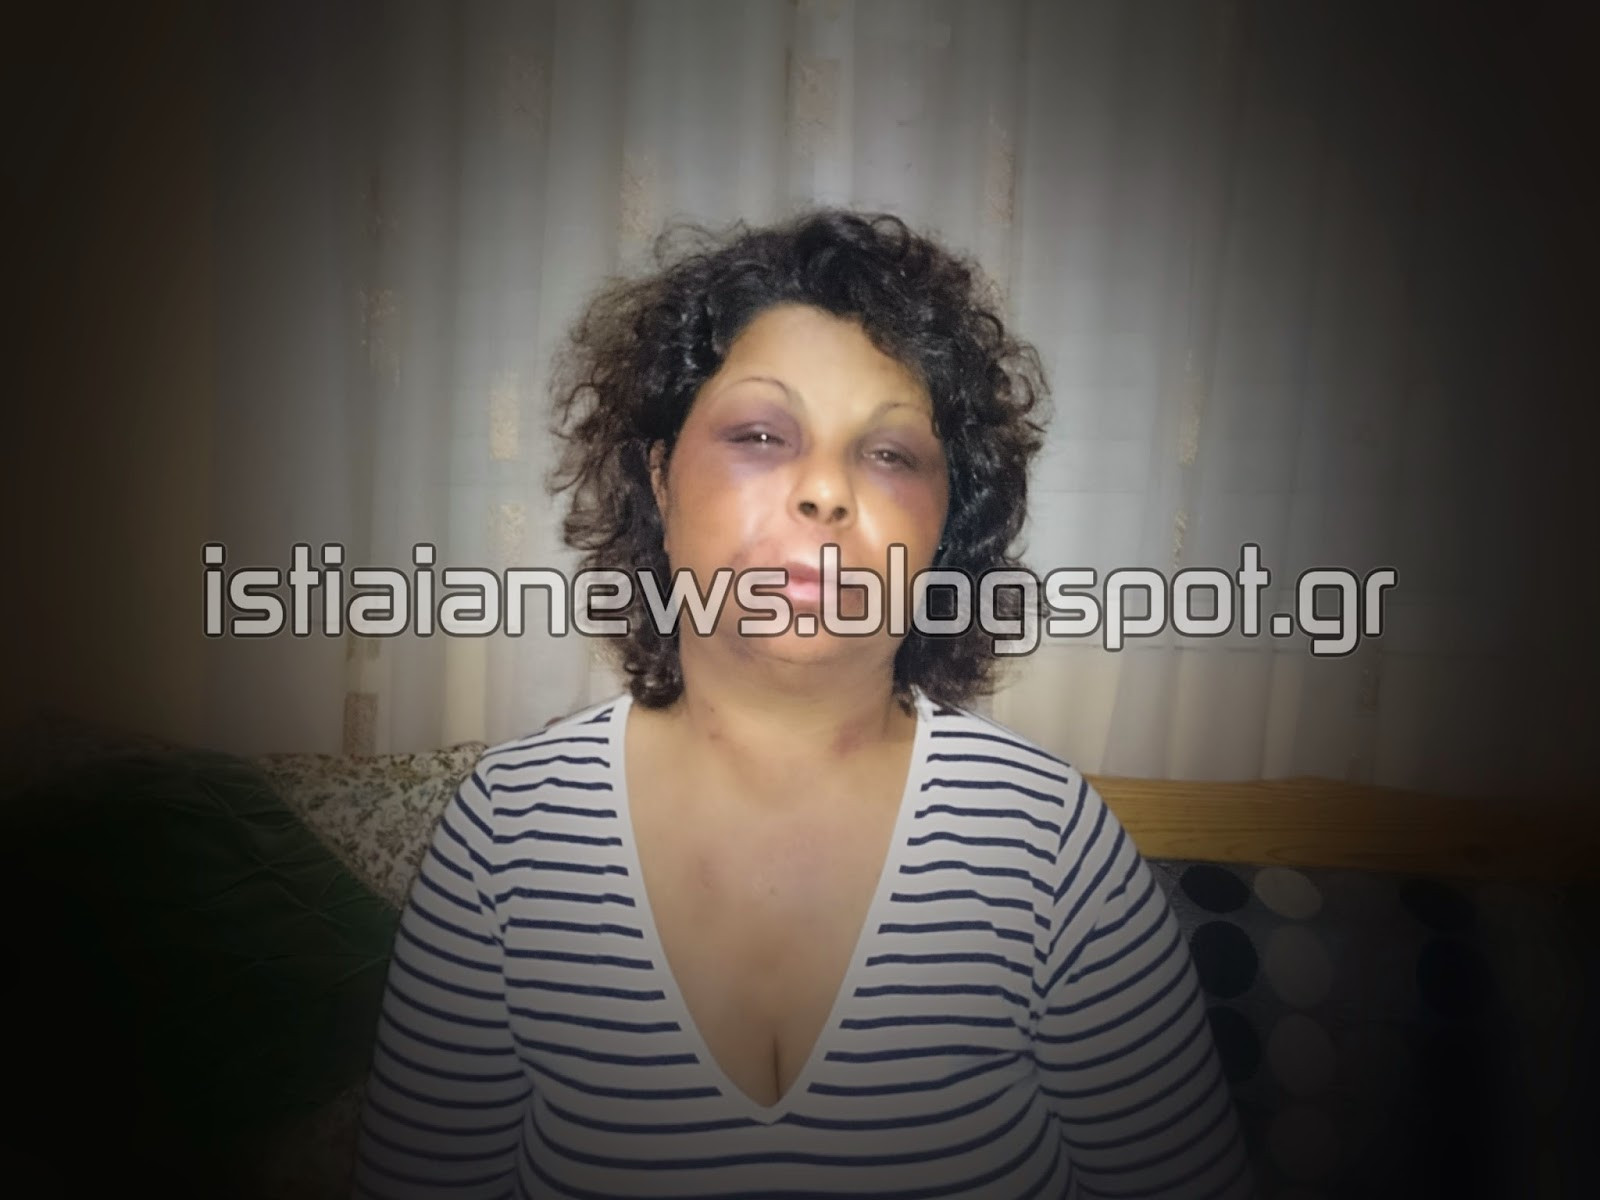 Τρεις άντρες χτύπησαν και βασάνισαν οικιακή βοηθό από τη Βουλγαρία